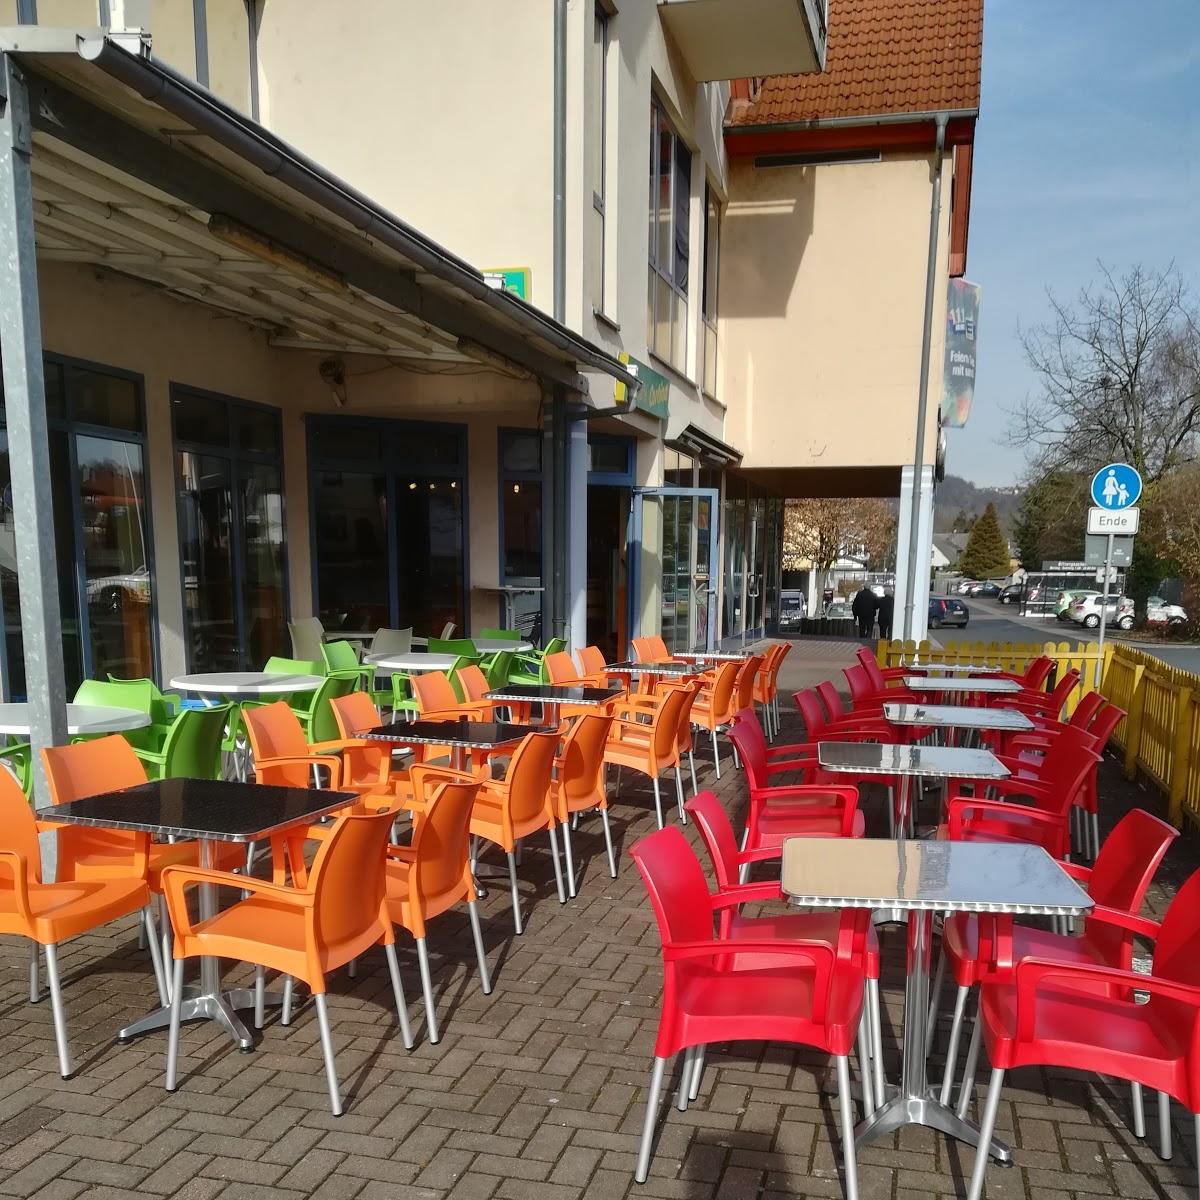 Restaurant "Eiscafé Cortina" in Ortenberg